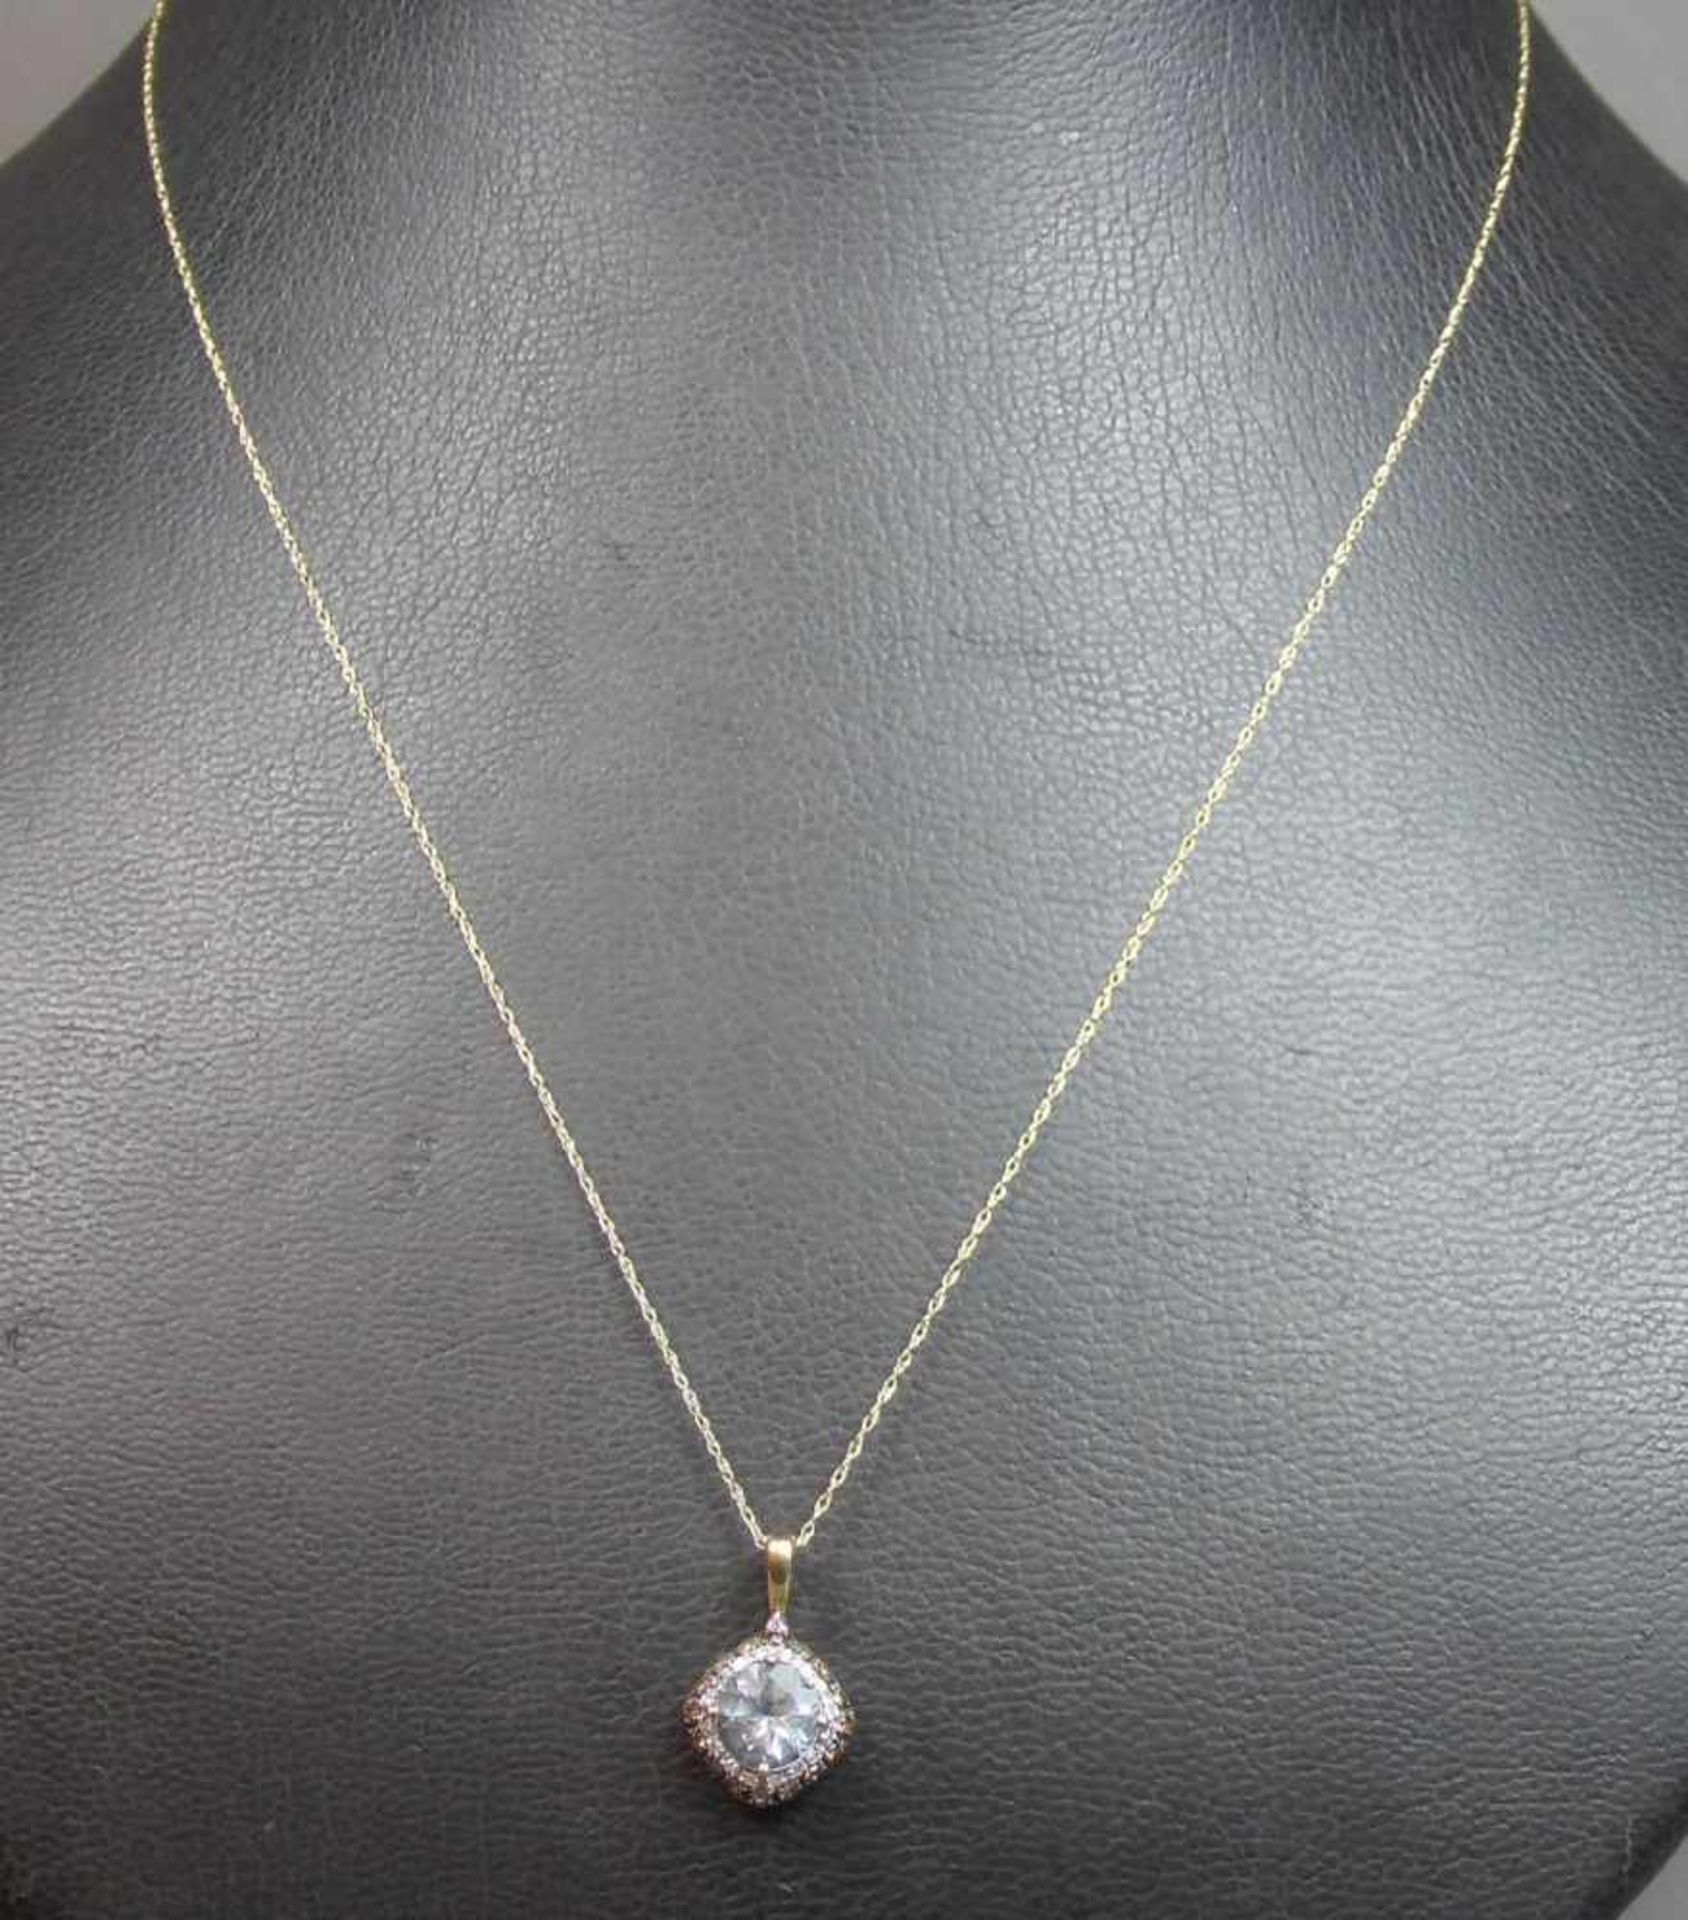 ANHÄNGER MIT AQUAMARIN AN KETTE / pendant and necklace, 10 kt. Gelbgold (417er, insgesamt 1,6 g); - Bild 5 aus 5